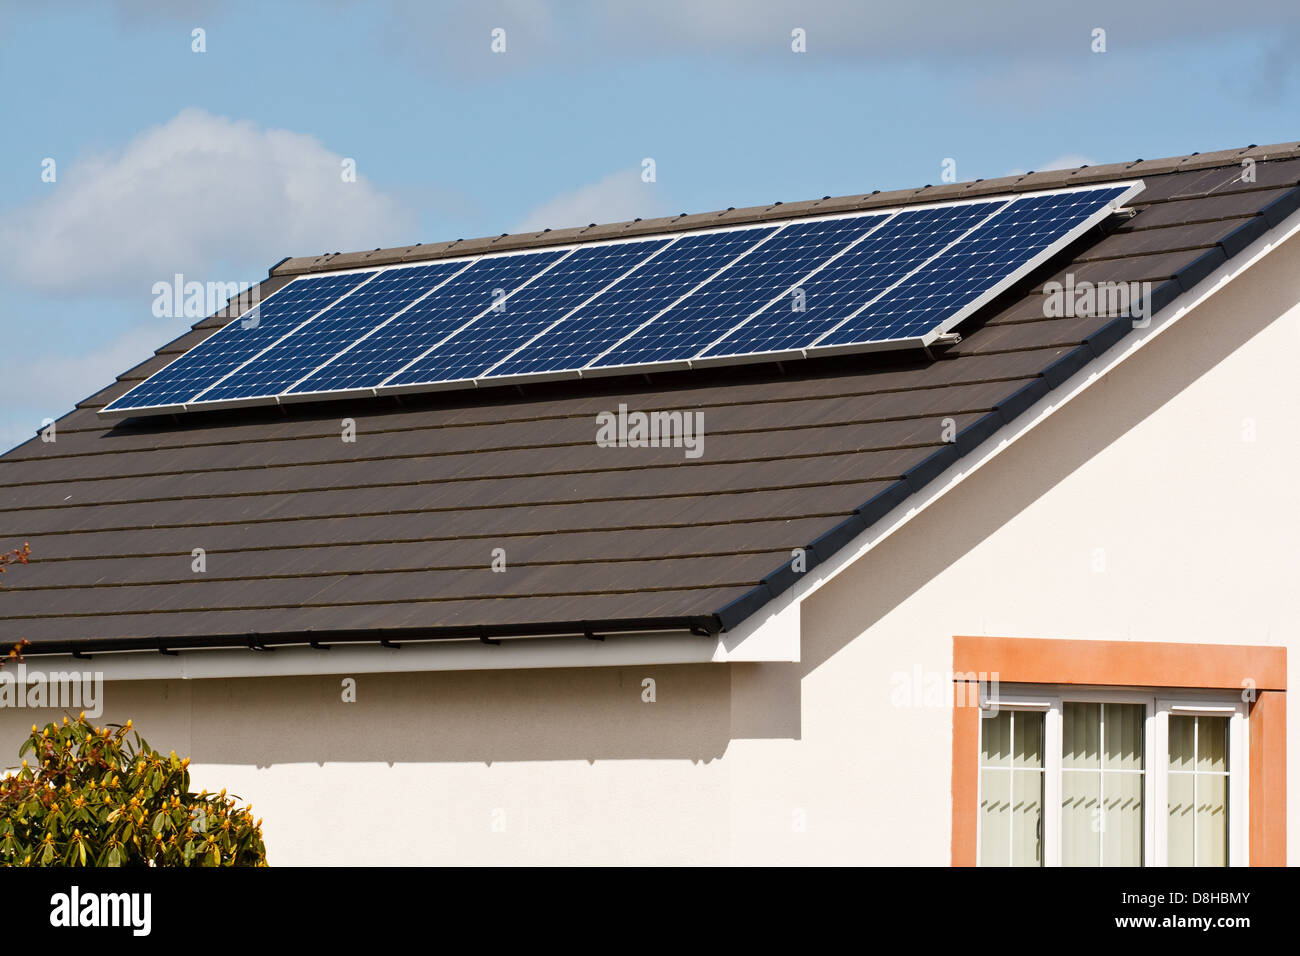 Panneaux solaires photovoltaïques montés sur une nouvelle tuile de toit d'une maison moderne Banque D'Images